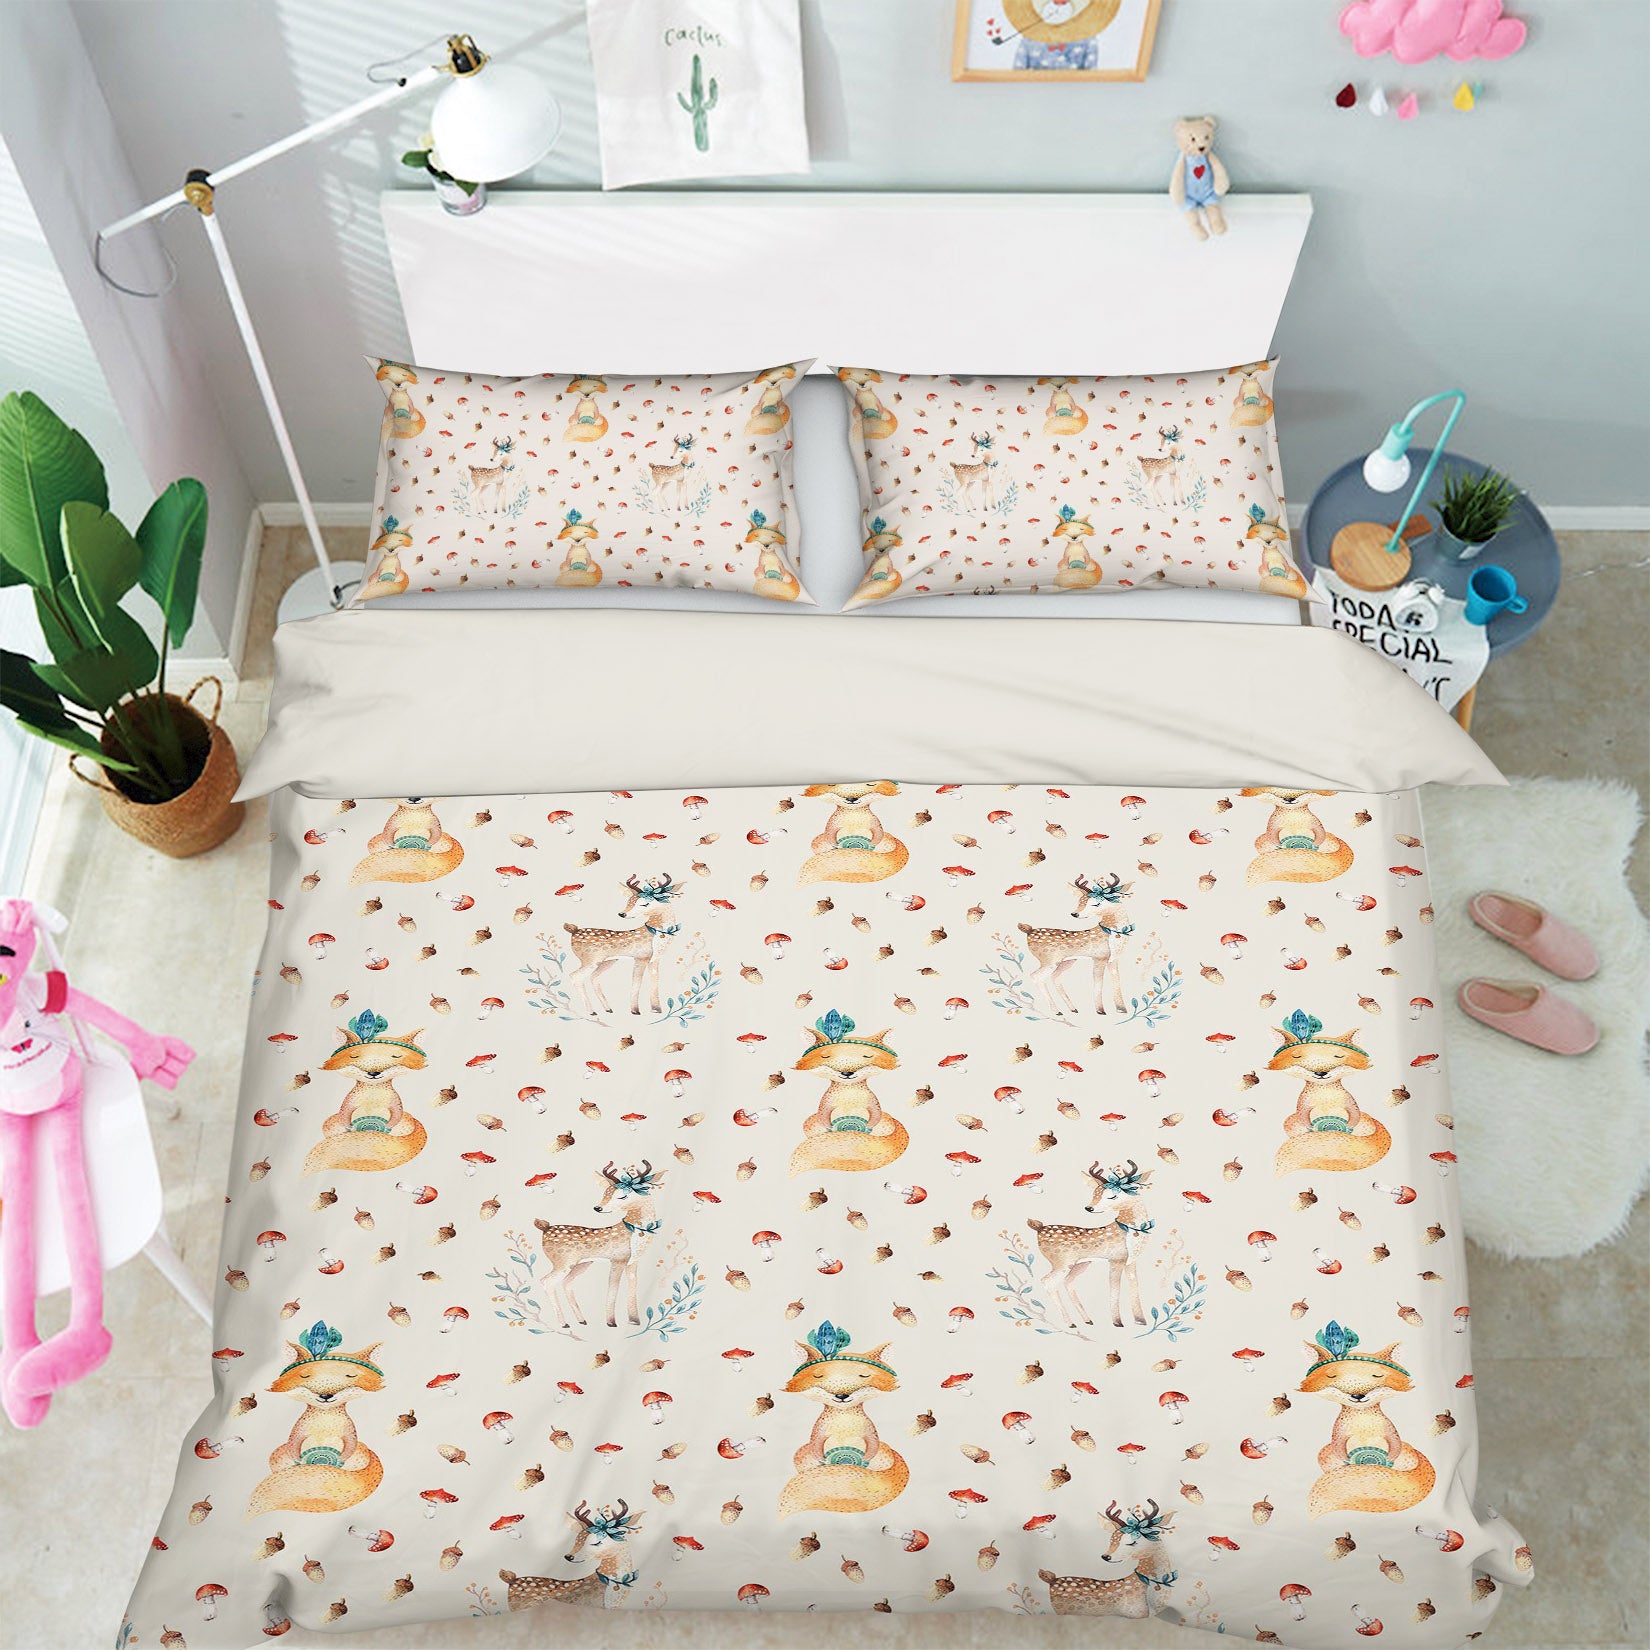 3D Fox Spotted Deer 209 Uta Naumann Bedding Bed Pillowcases Quilt